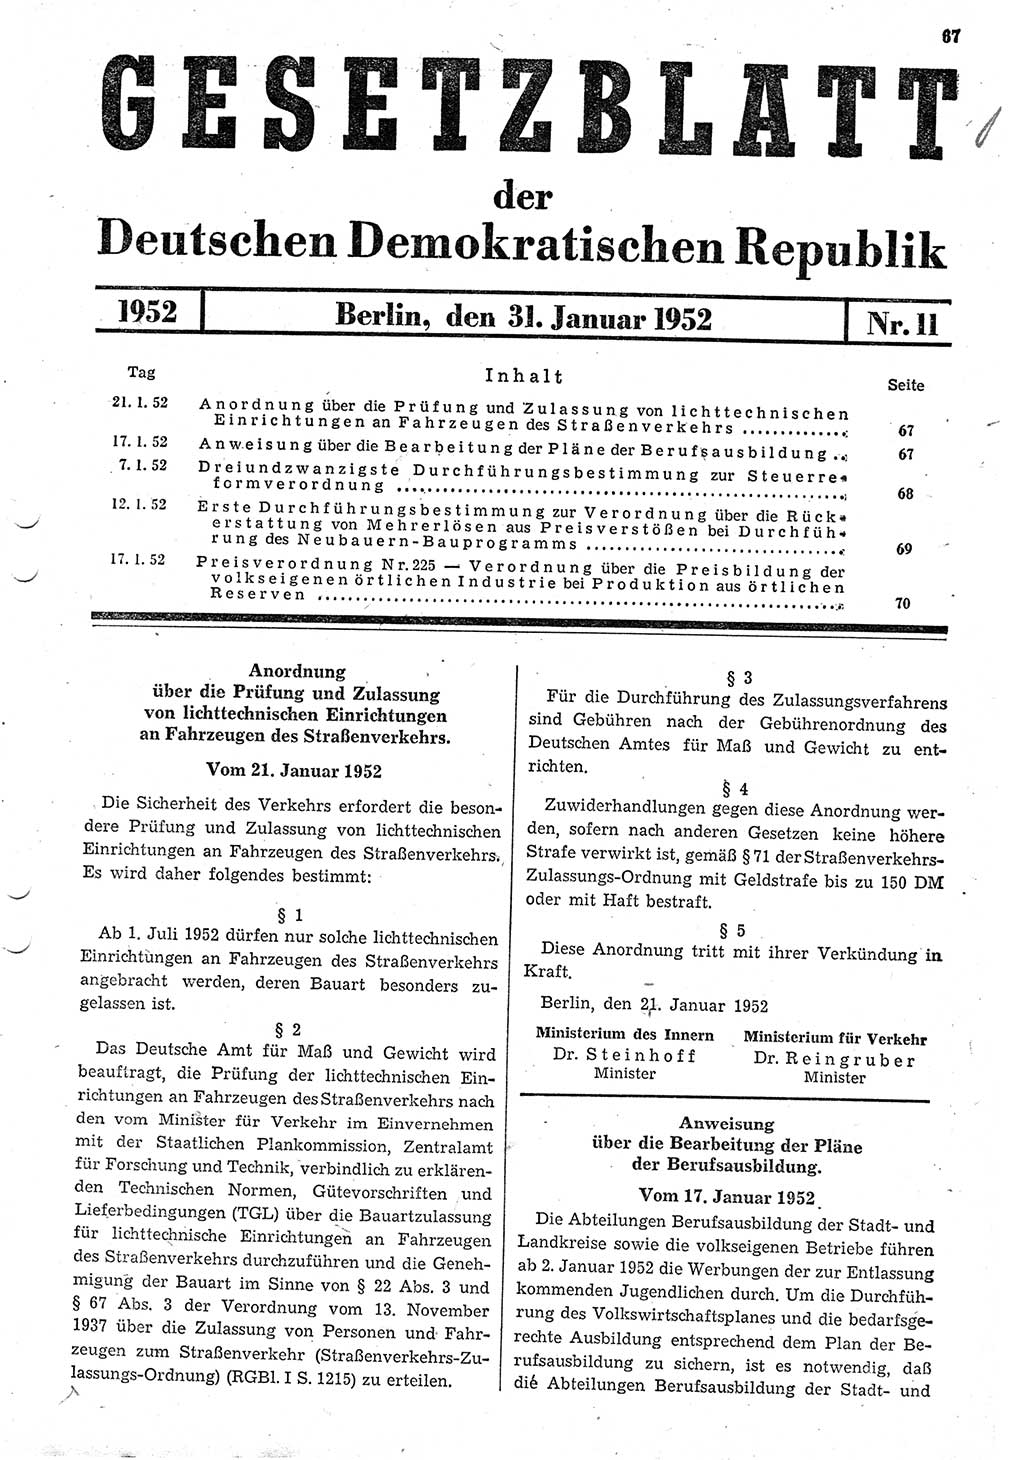 Gesetzblatt (GBl.) der Deutschen Demokratischen Republik (DDR) 1952, Seite 67 (GBl. DDR 1952, S. 67)